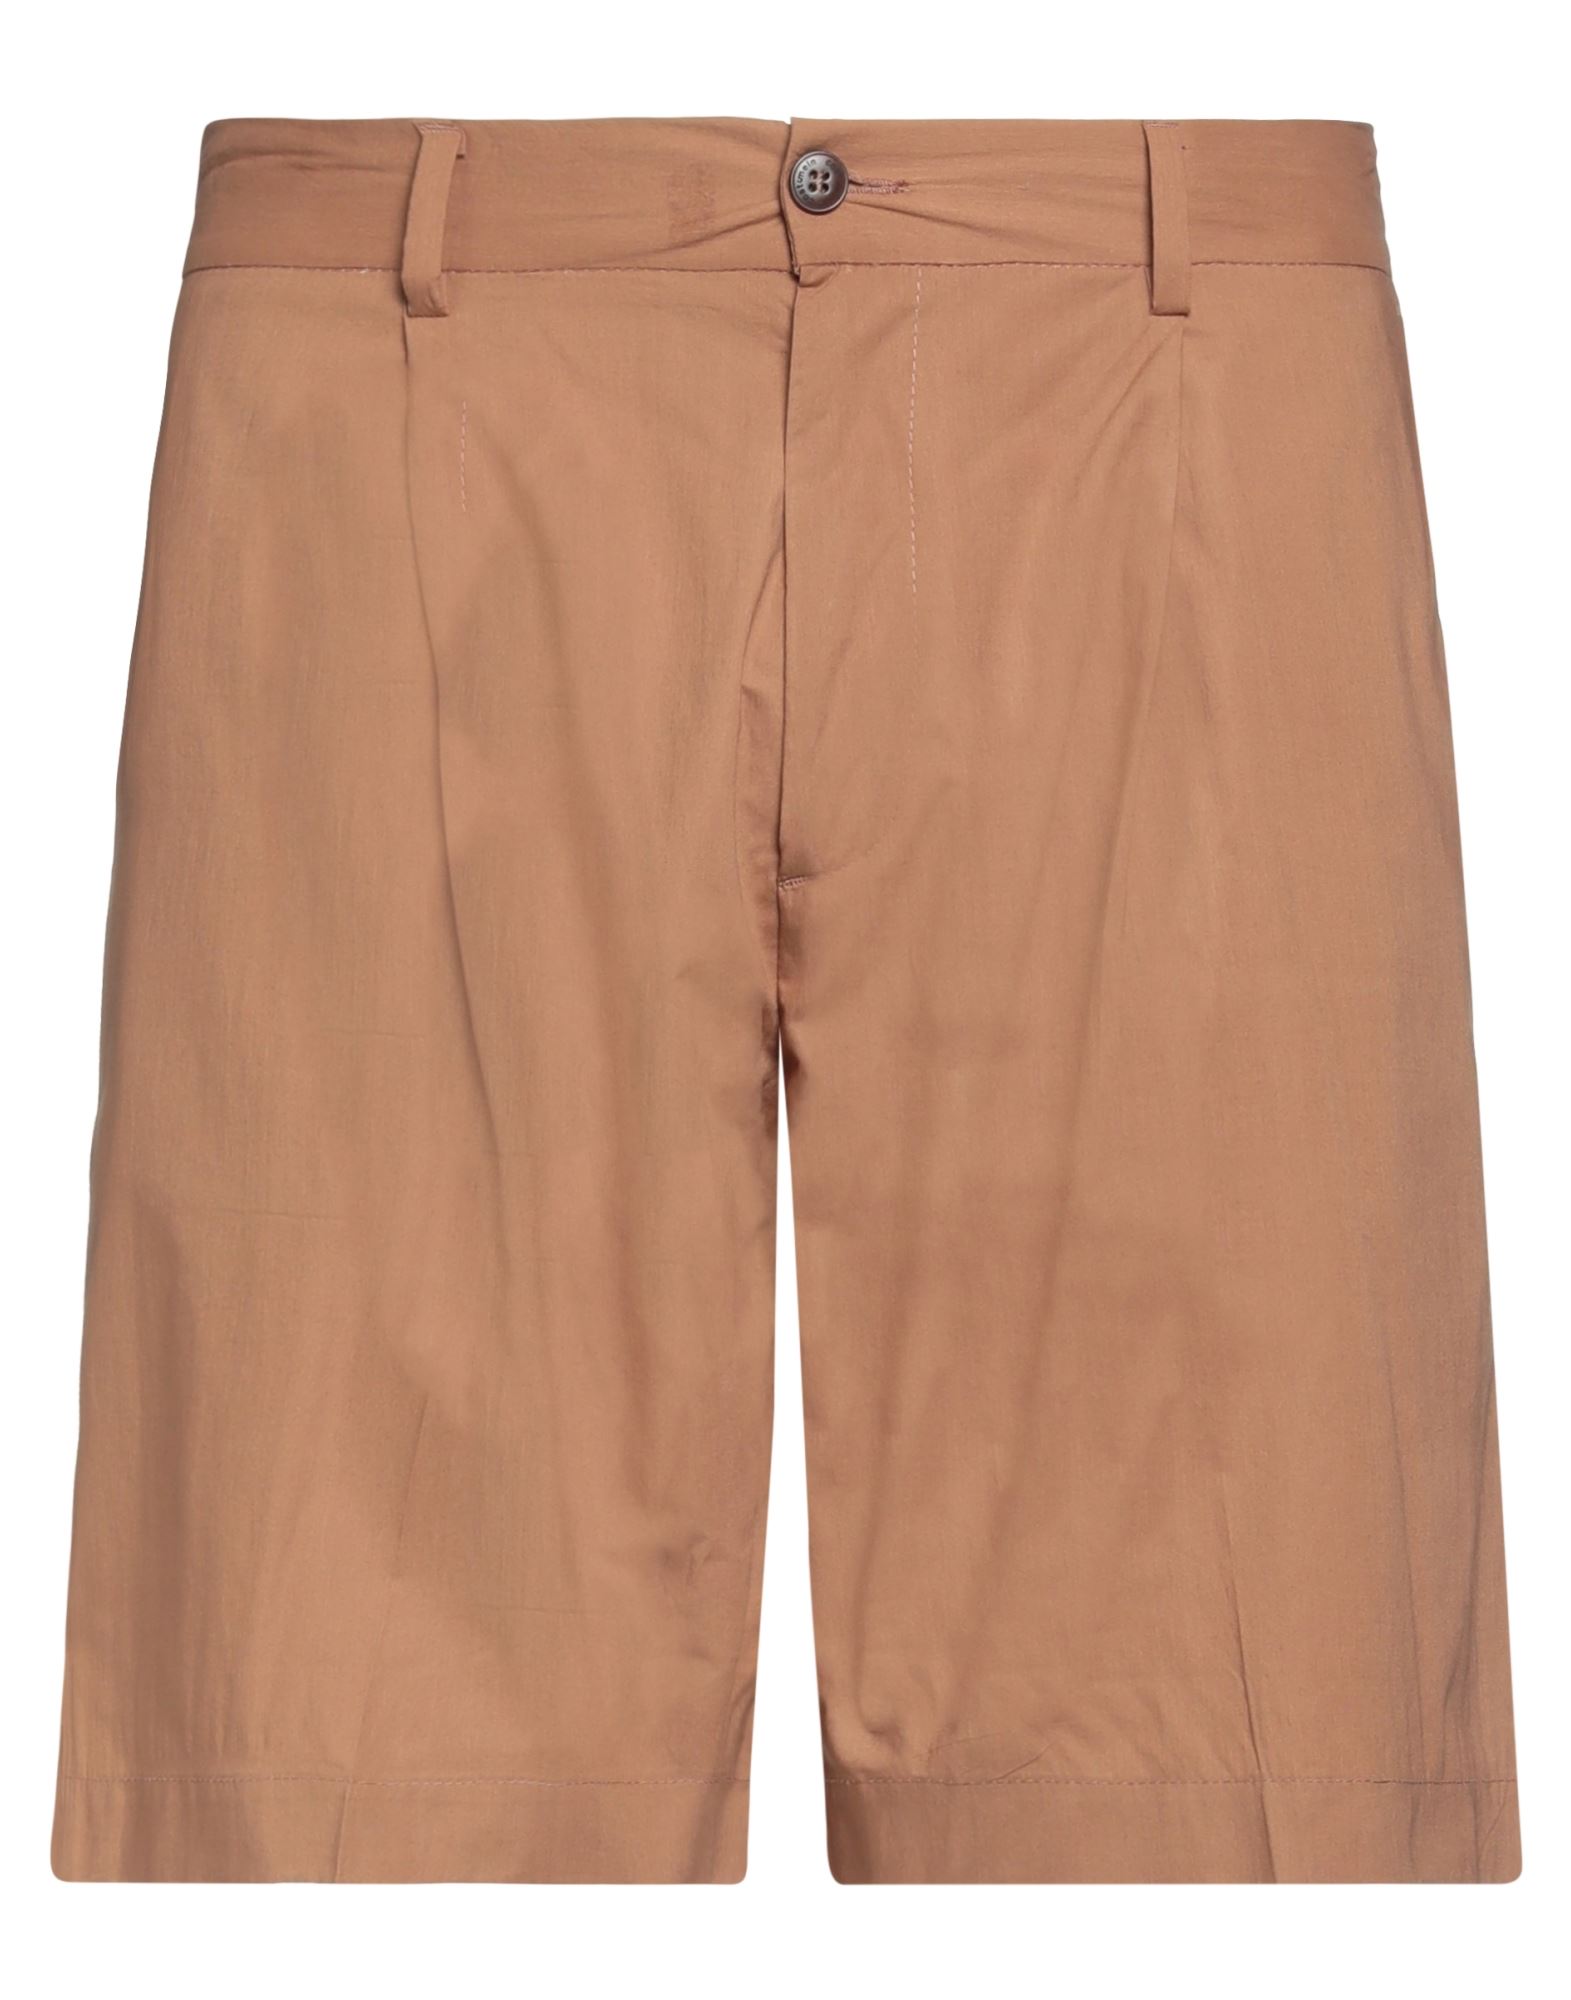 Costumein Man Shorts & Bermuda Shorts Camel Size 36 Cotton In Beige